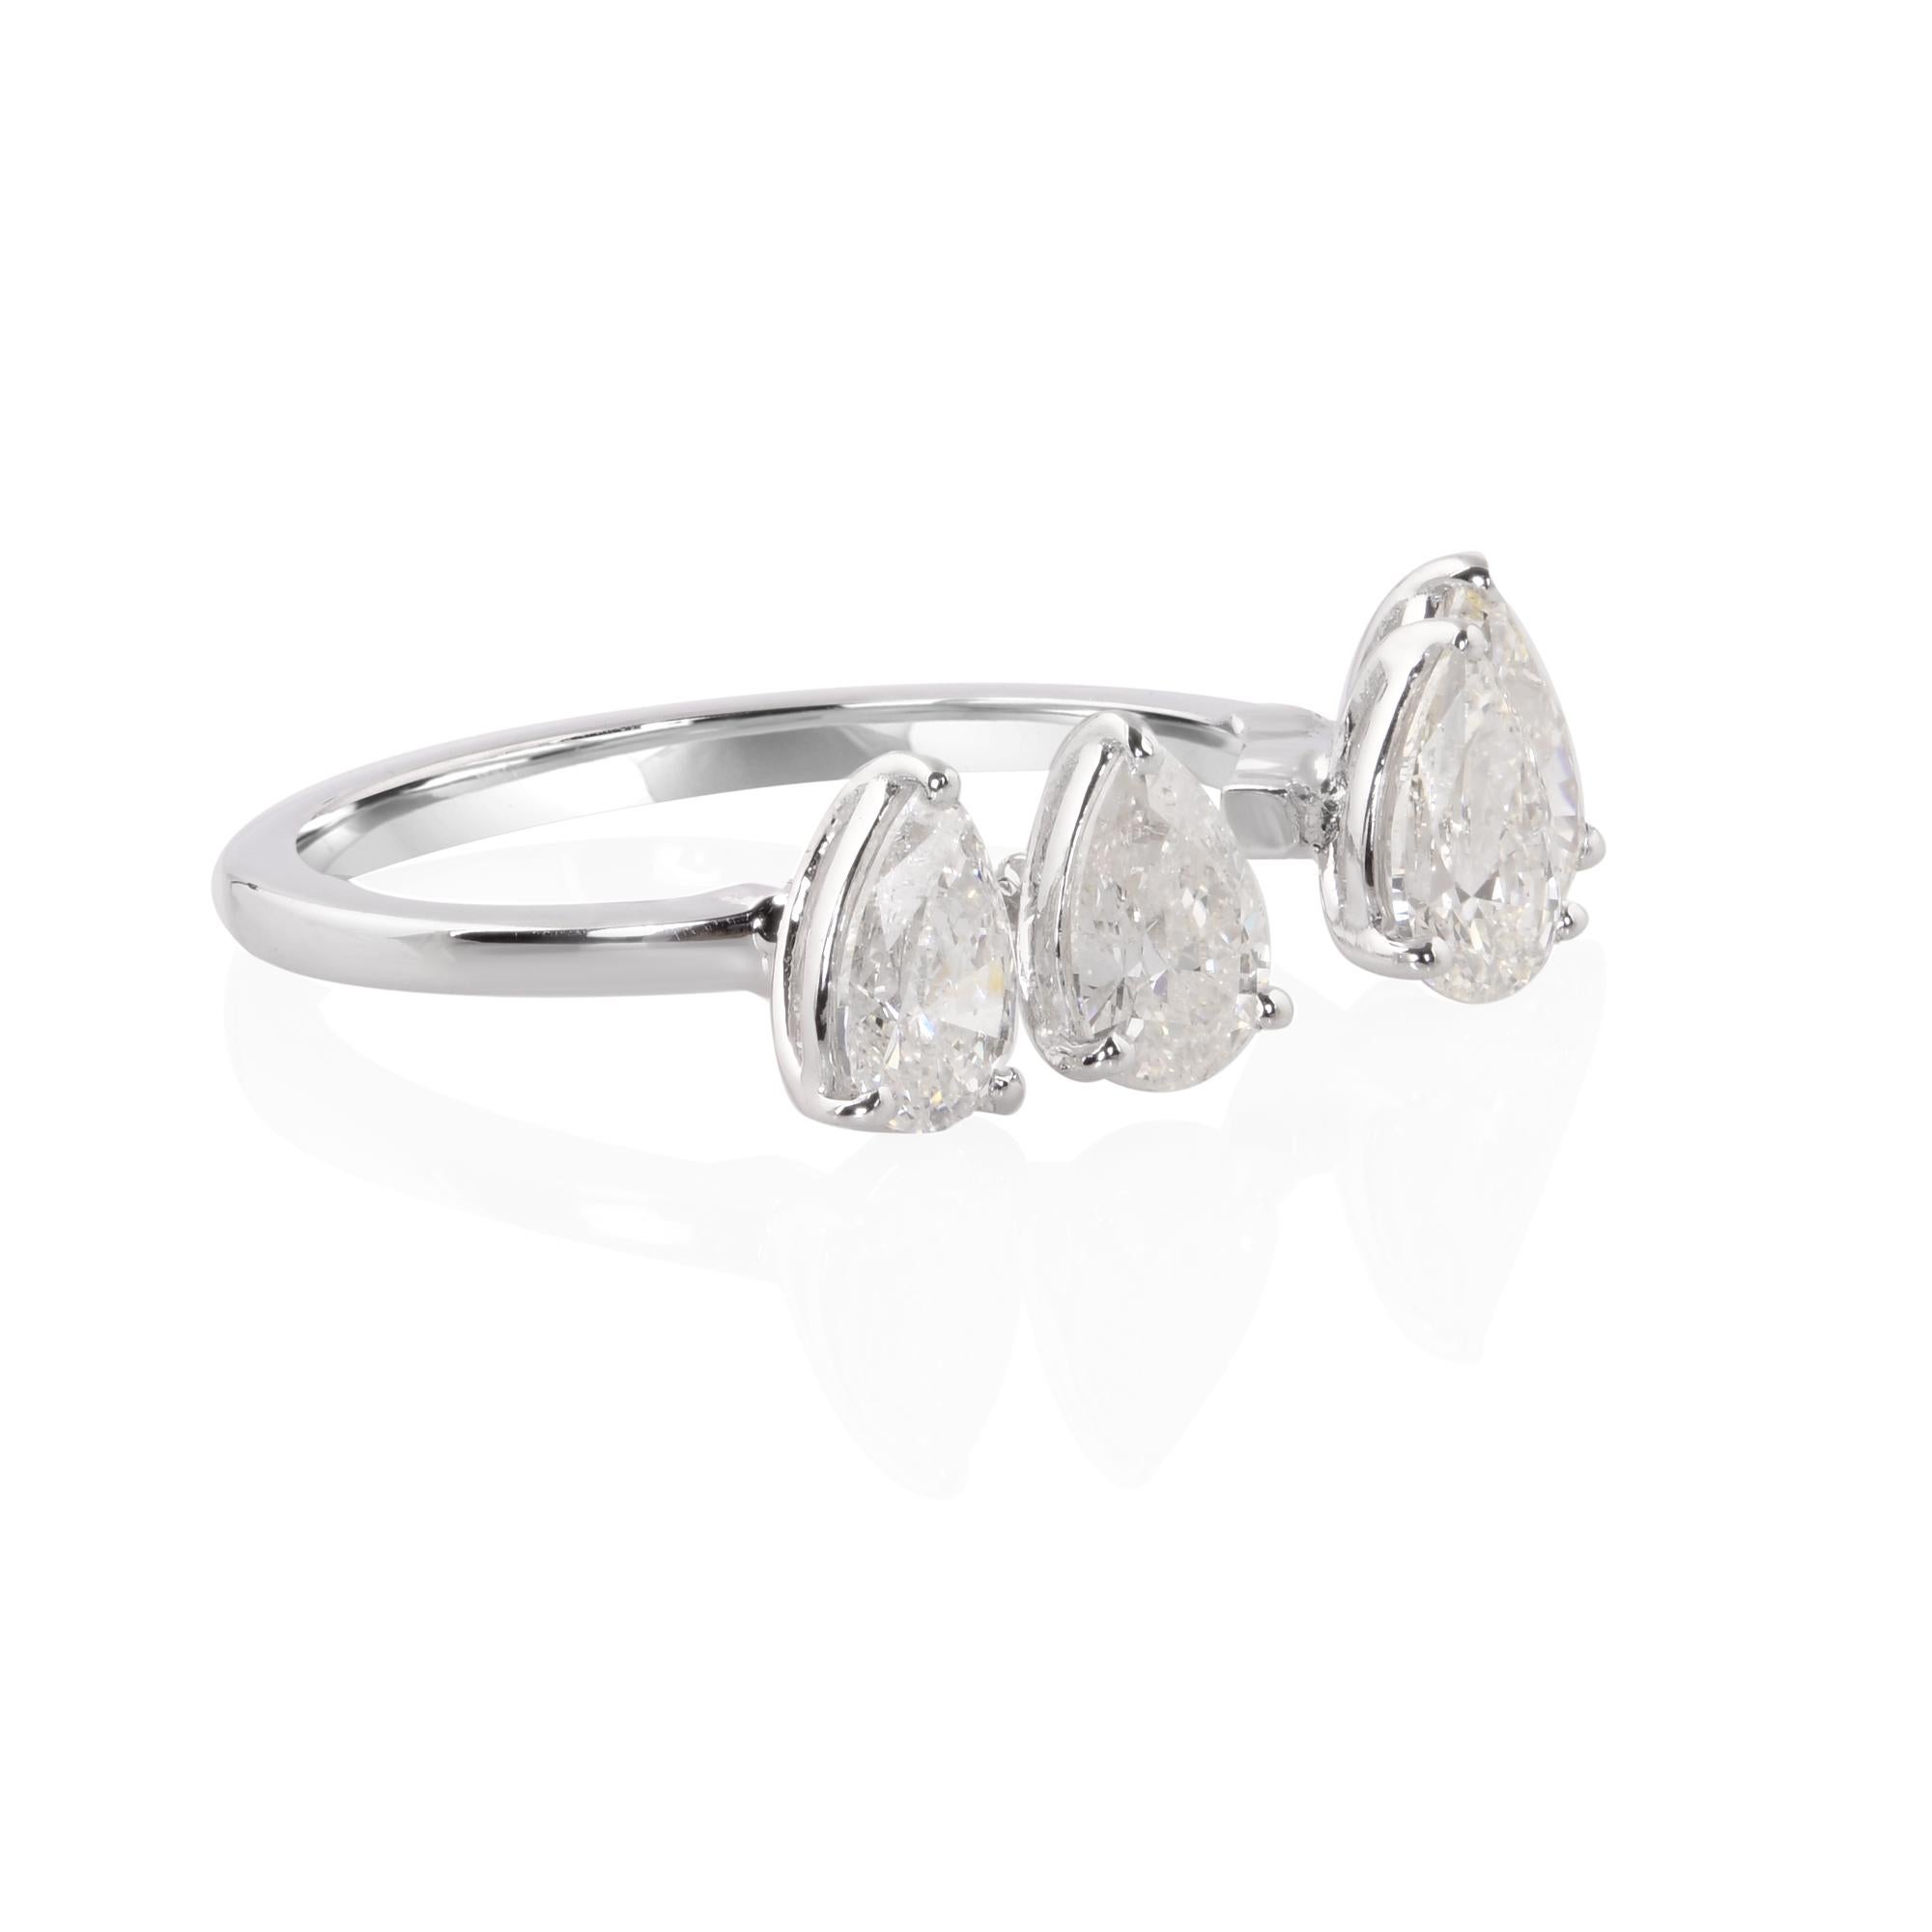 Das Herzstück dieses atemberaubenden Manschettenrings ist ein atemberaubender birnenförmiger Diamant mit einem Gewicht von 1,65 Karat. Seine anmutige Silhouette und seine brillanten Facetten strahlen eine fesselnde Anziehungskraft aus, die den